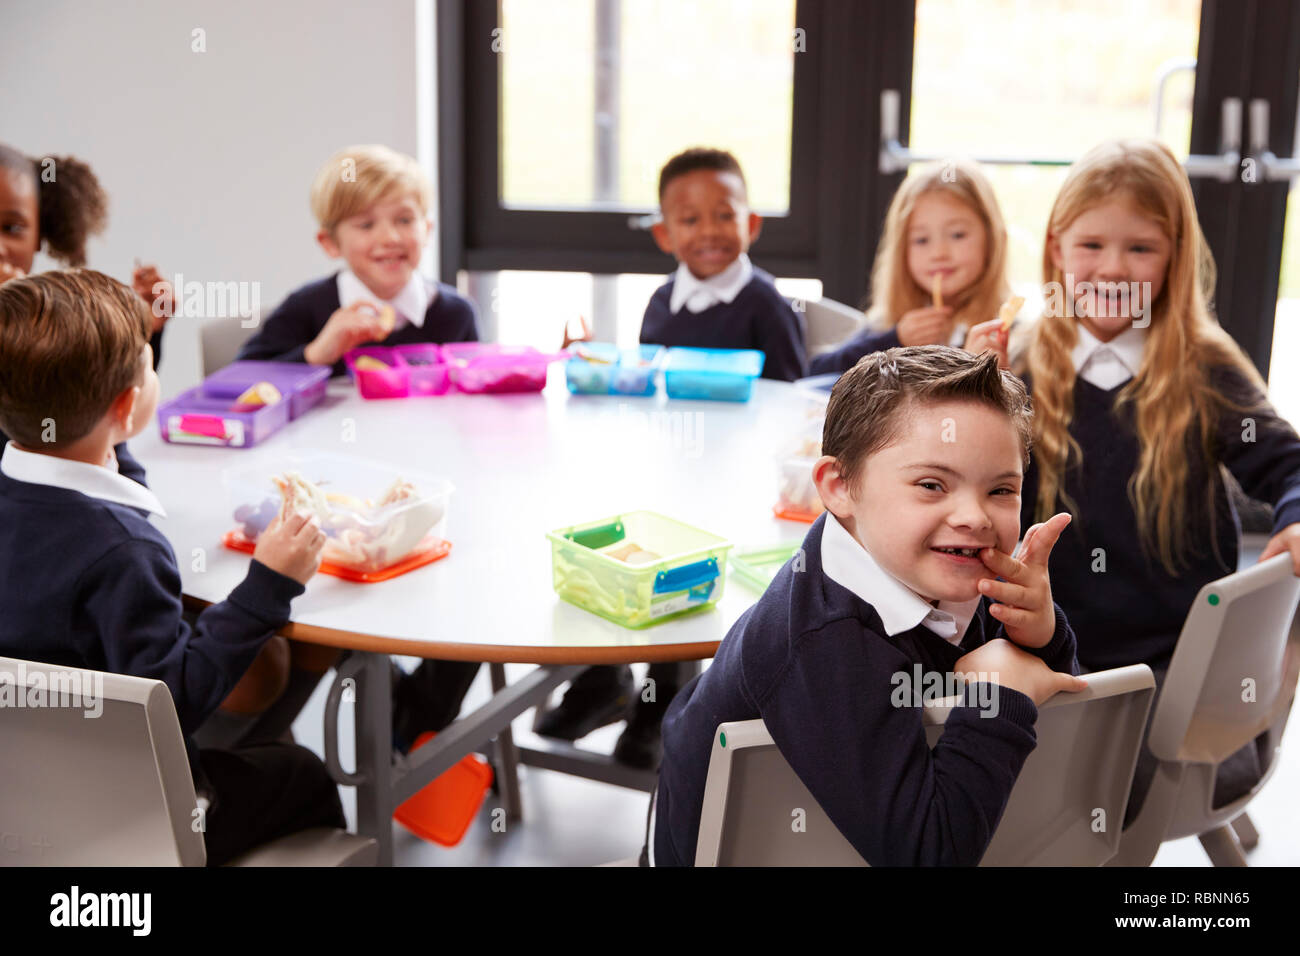 Ansicht der Grundschule Kinder sitzen gemeinsam an einem runden Tisch ihre Lunchpakete zu Essen, einige Drehen um die Kamera Stockfoto